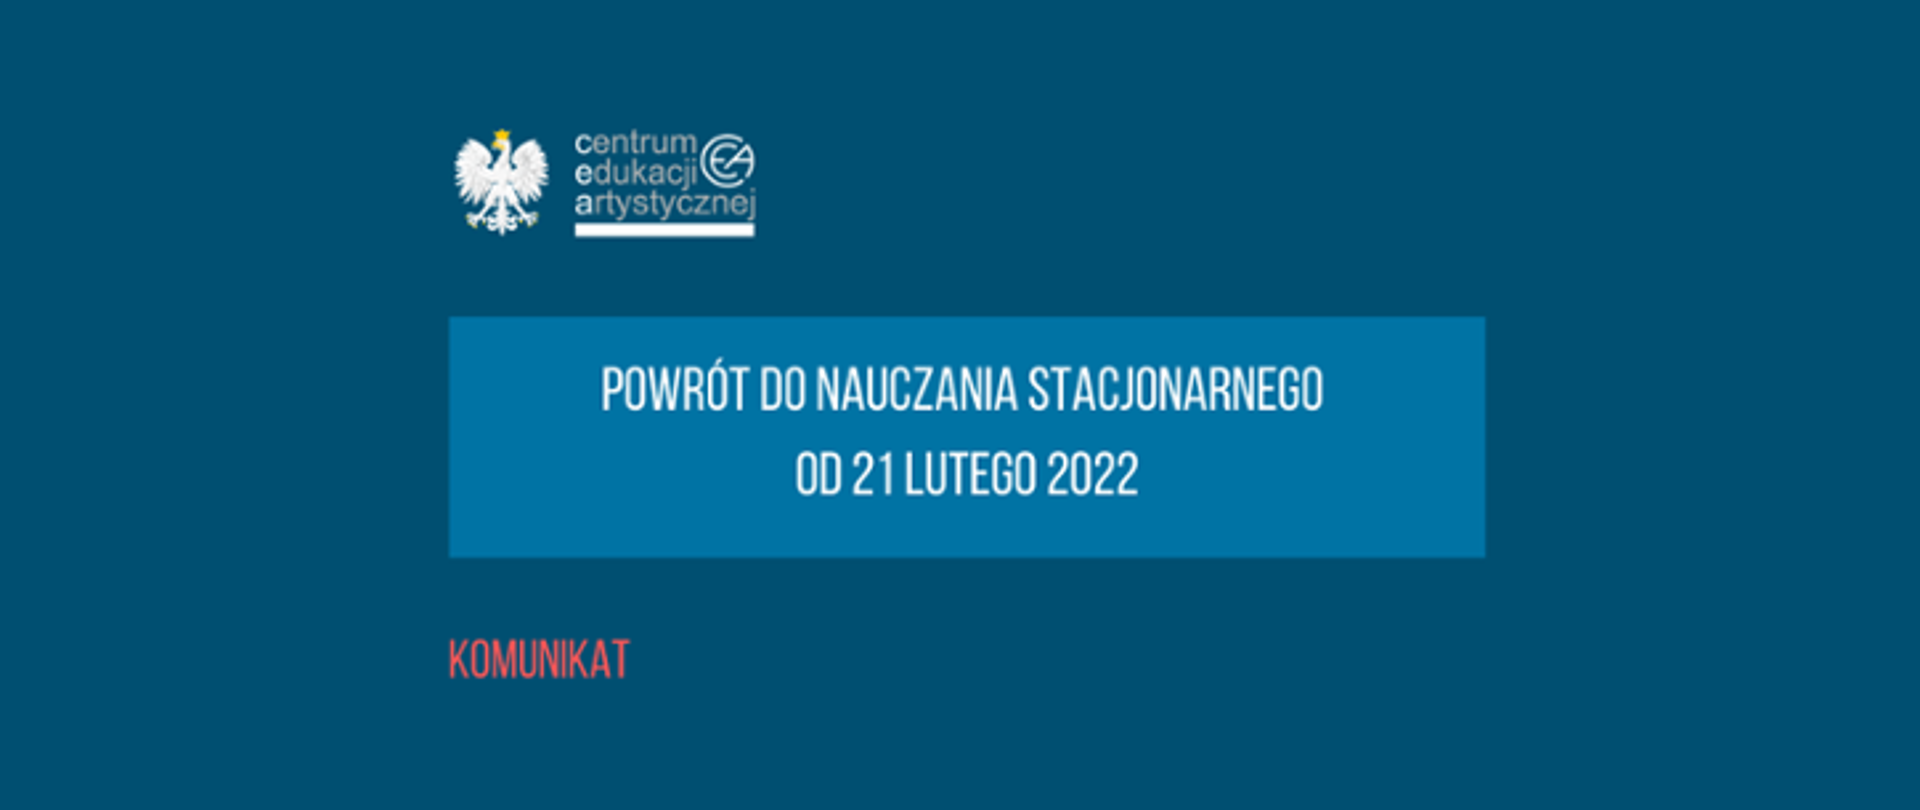 Grafika na niebieskim tle z tekstem "Komunikat powrót do nauczania stacjonarnego od 21 lutego 2022" i logo CEA z orzełkiem